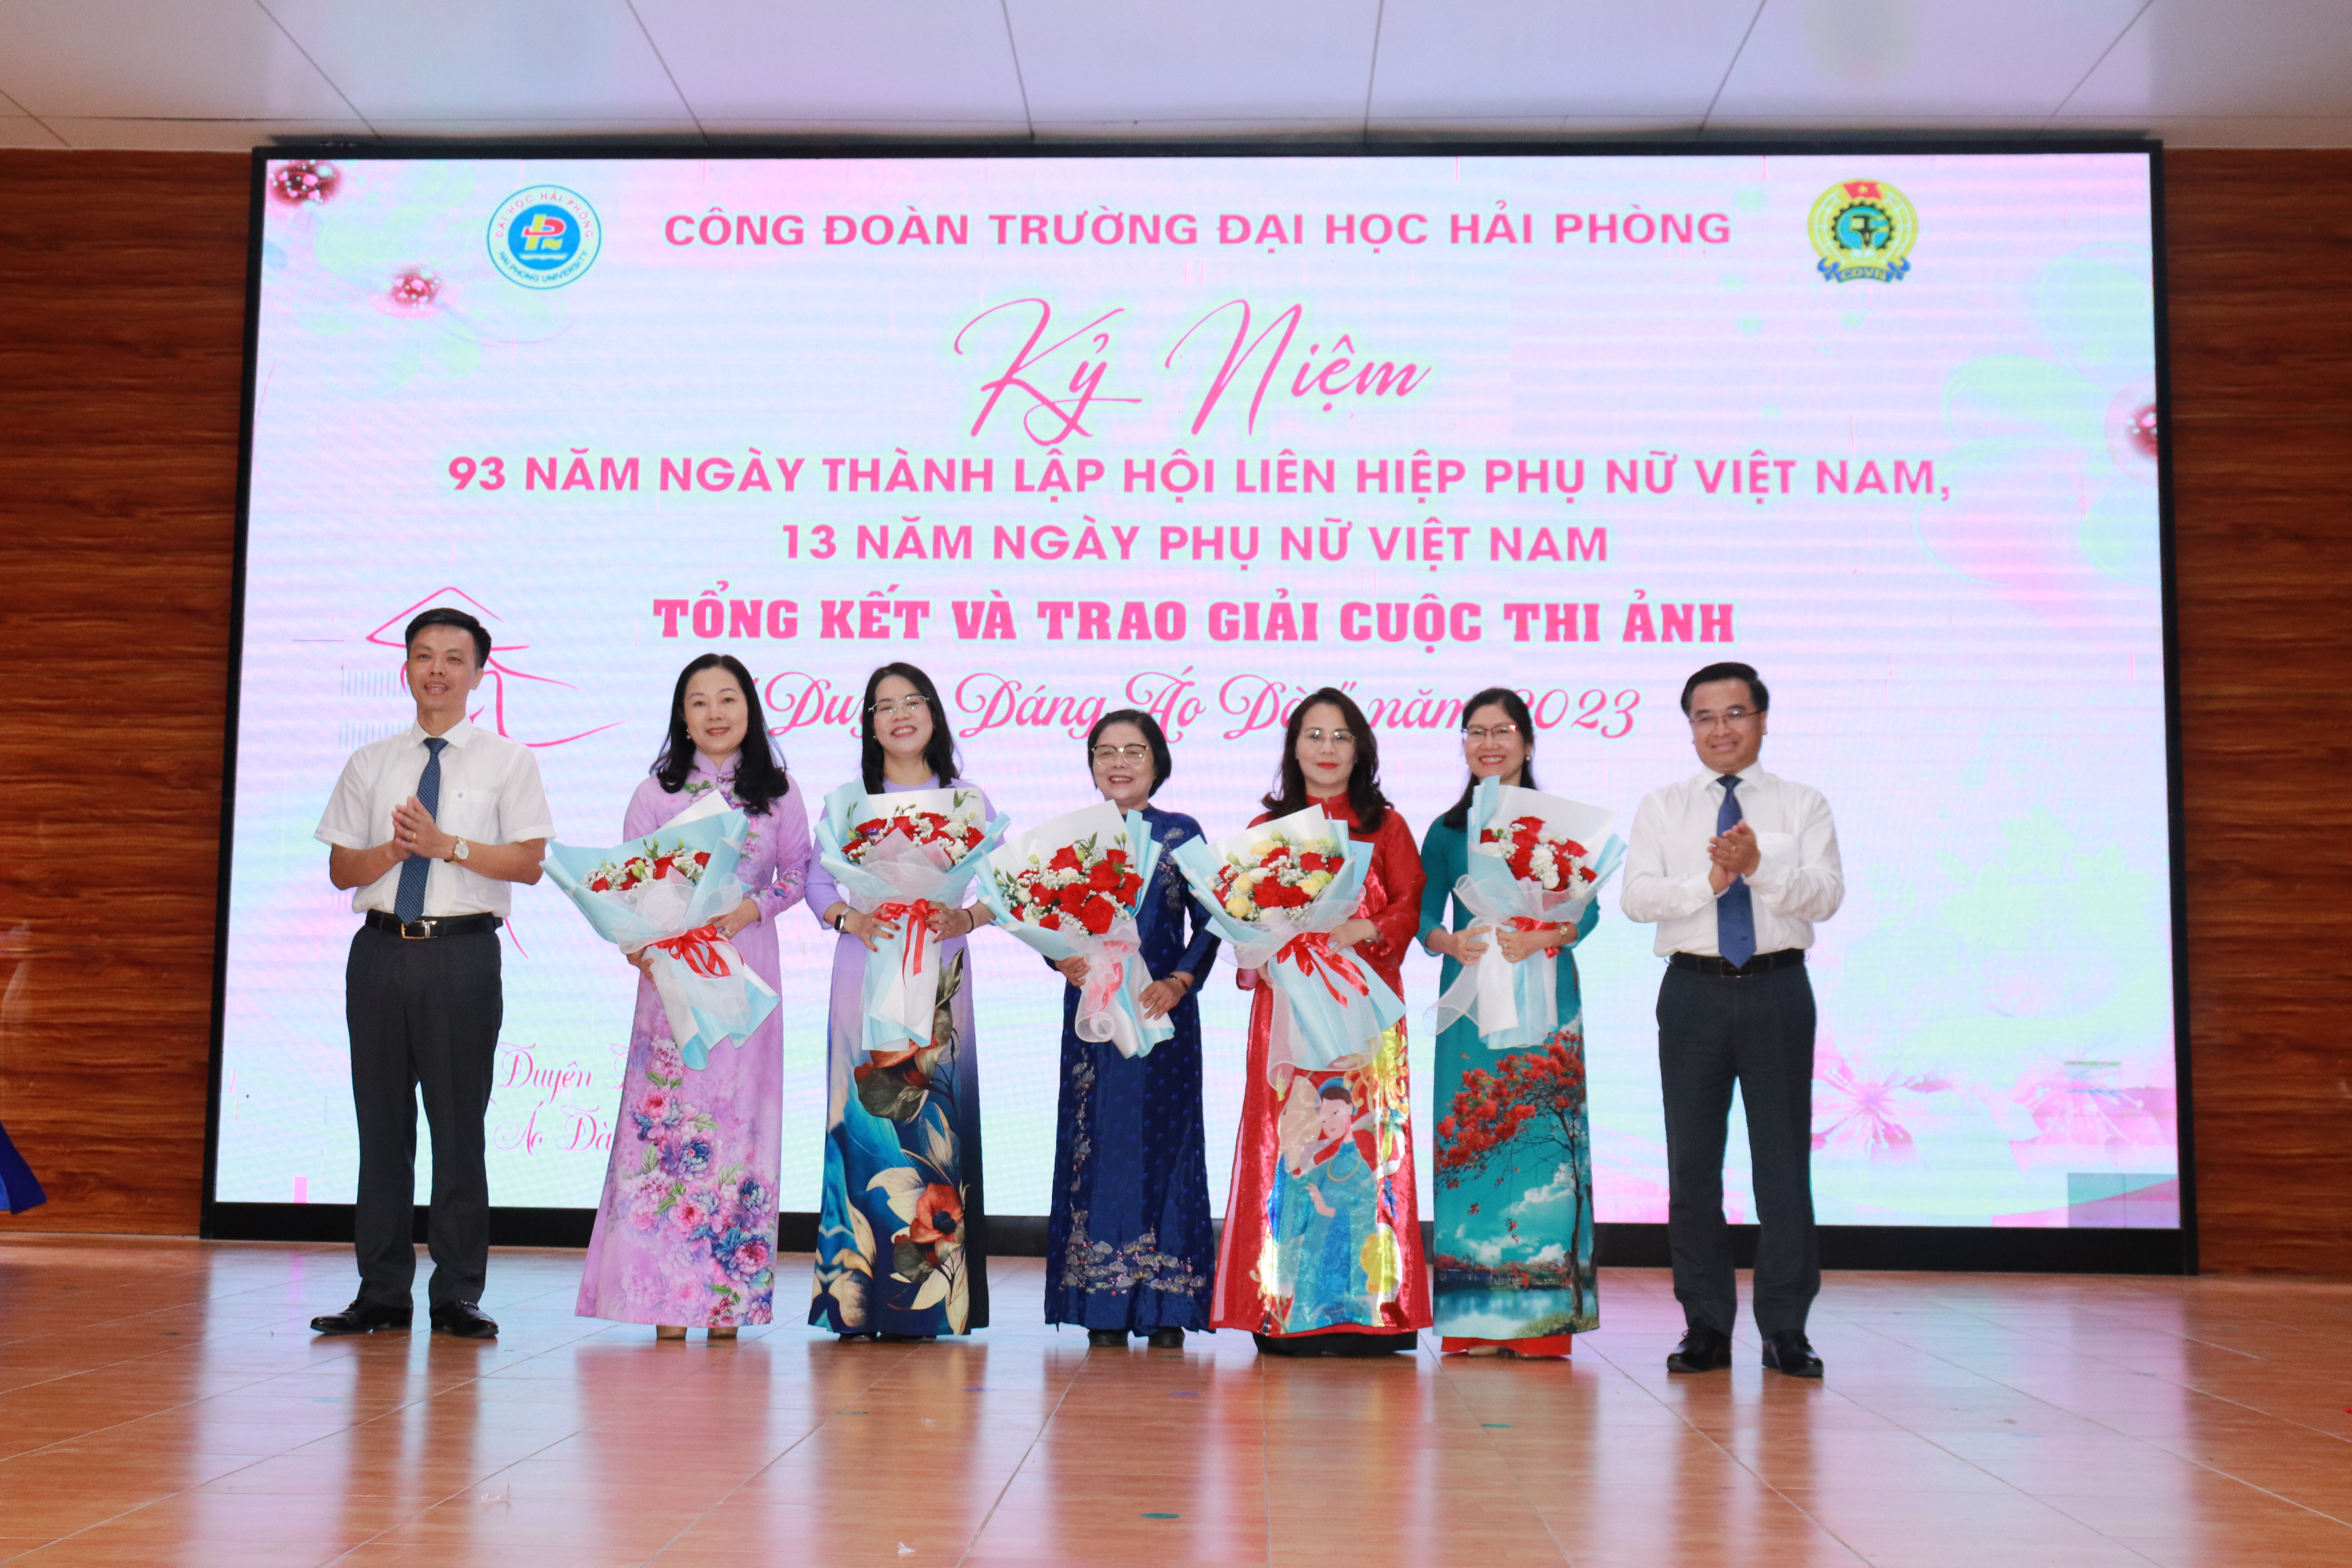 Chương trình Kỉ niệm 93 năm Ngày thành lập Hội liên hiệp Phụ nữ Việt Nam (20/10/1930 - 20/10/2023), Ngày Phụ nữ Việt Nam (20/10/2010 - 20/10/2023) và trao giải cuộc thi ảnh "Duyên dáng Áo Dài"